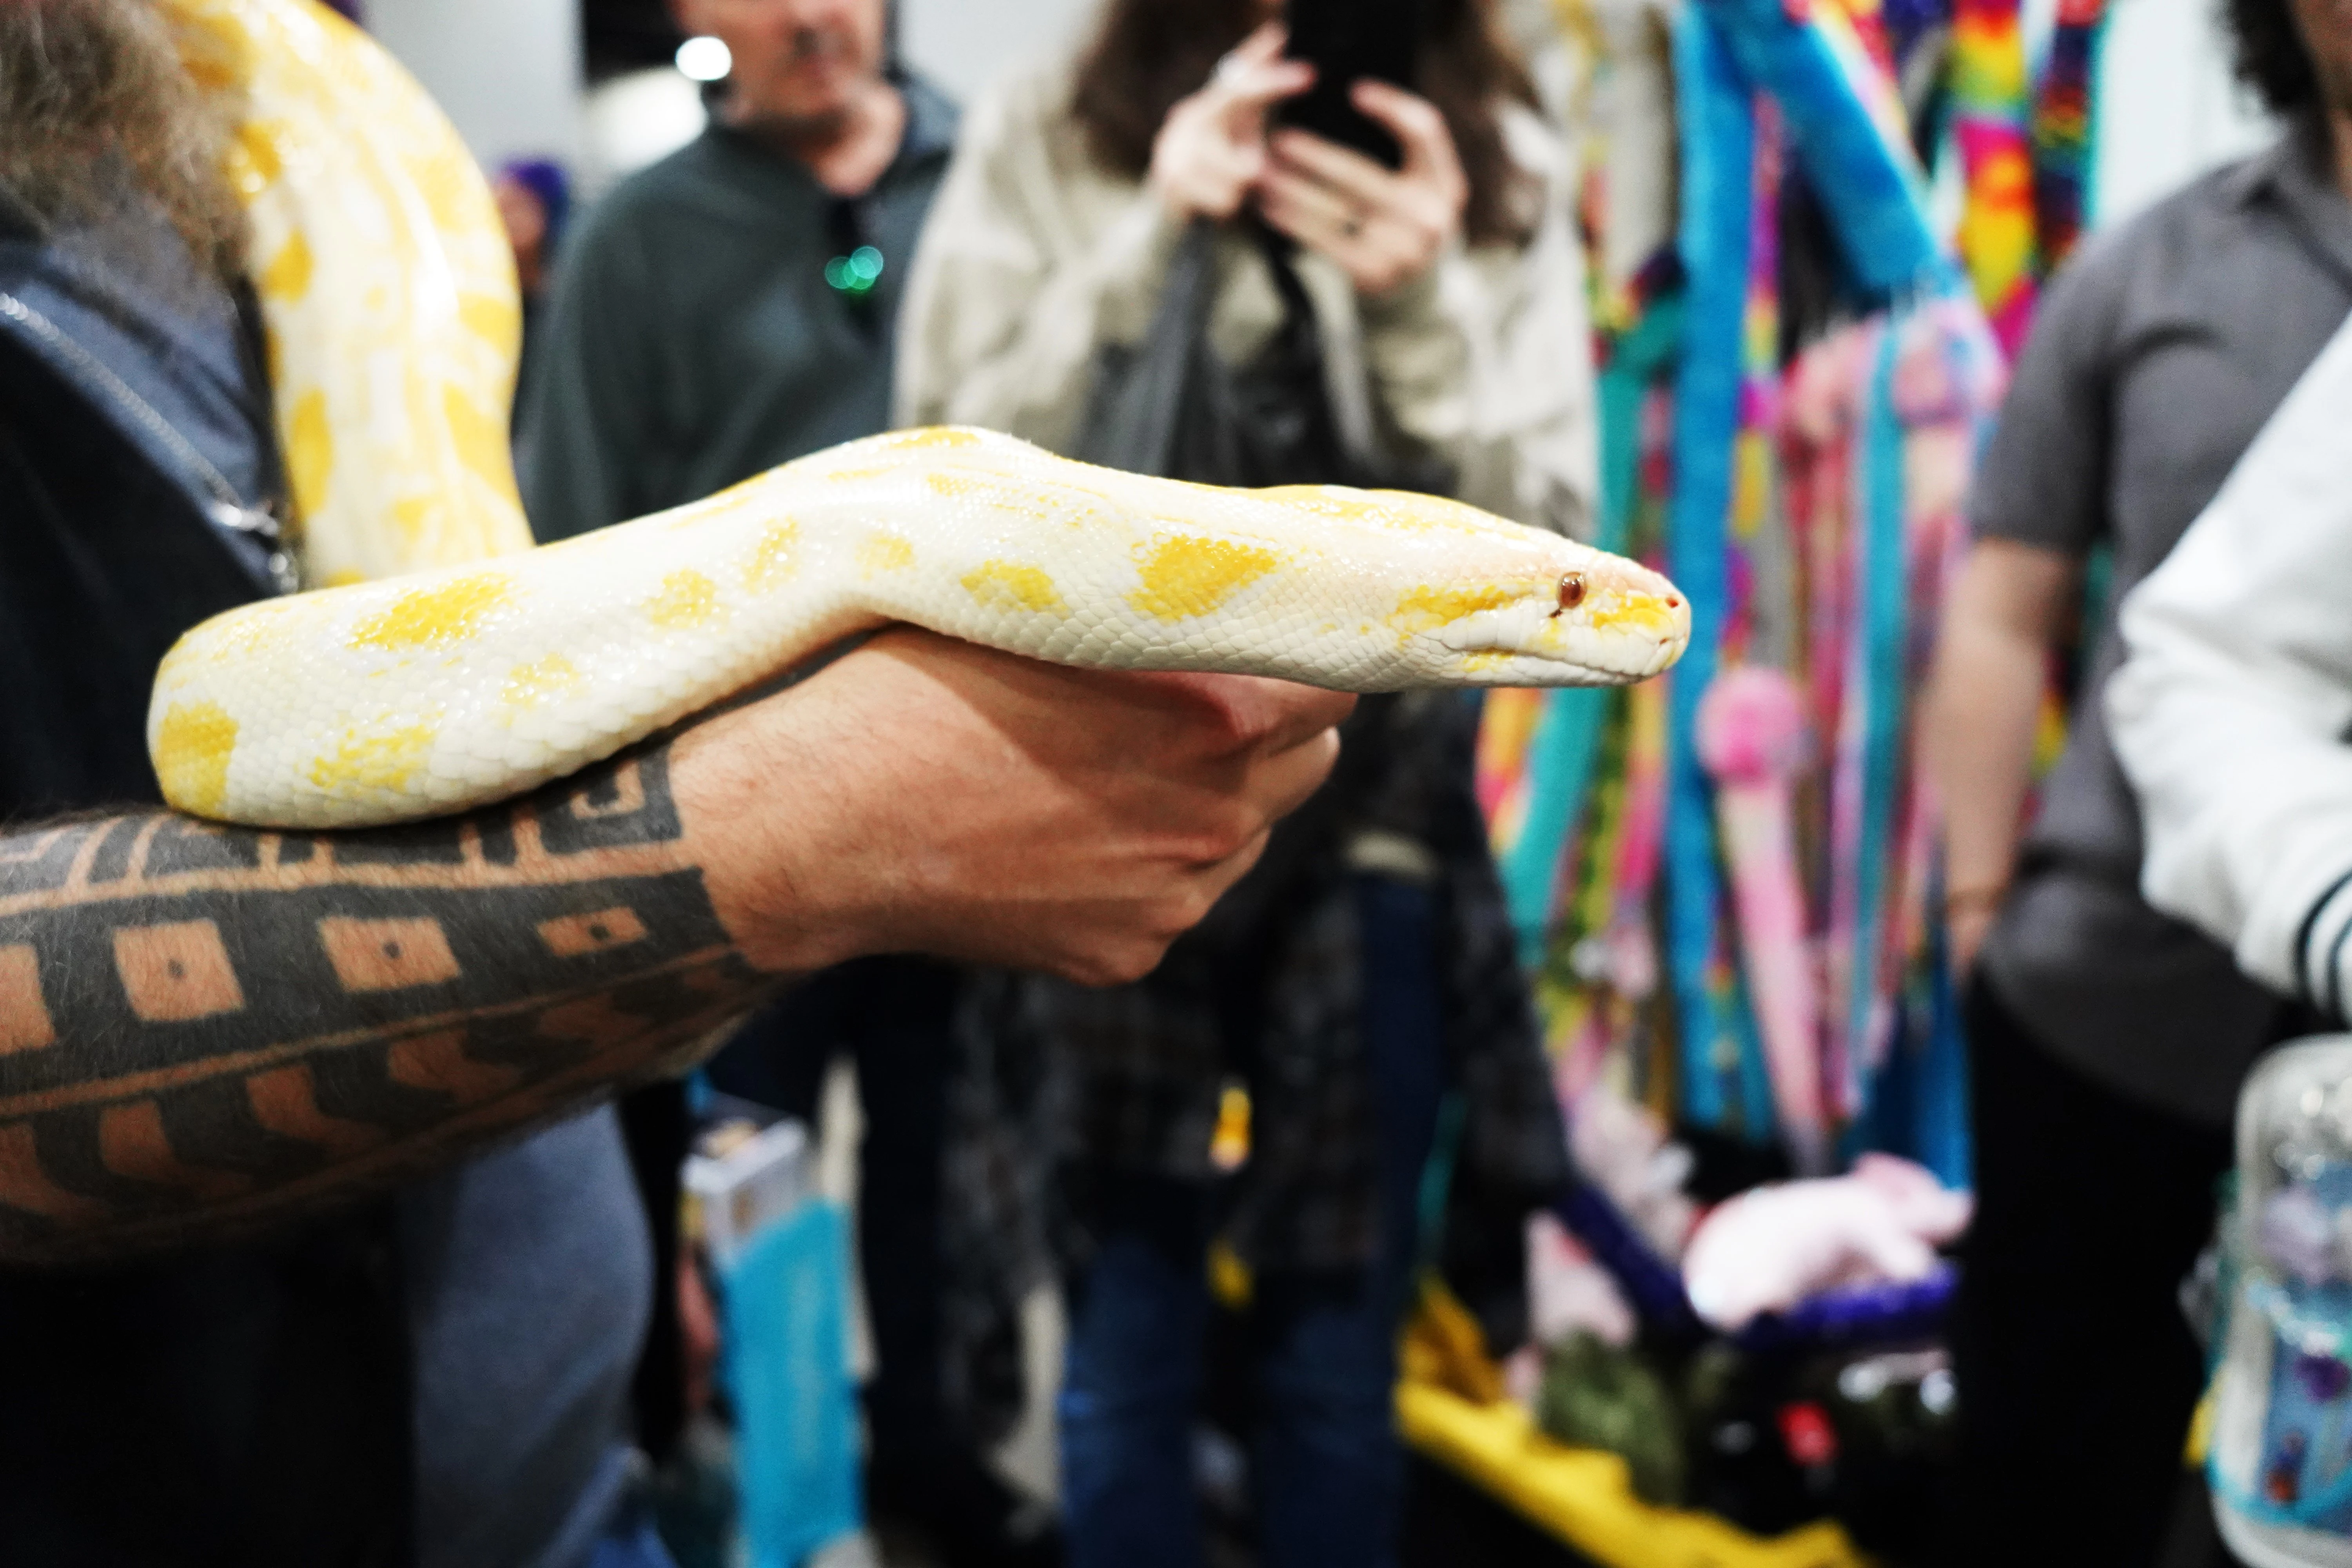 Big Yellow Snake at ATL Comic Convention